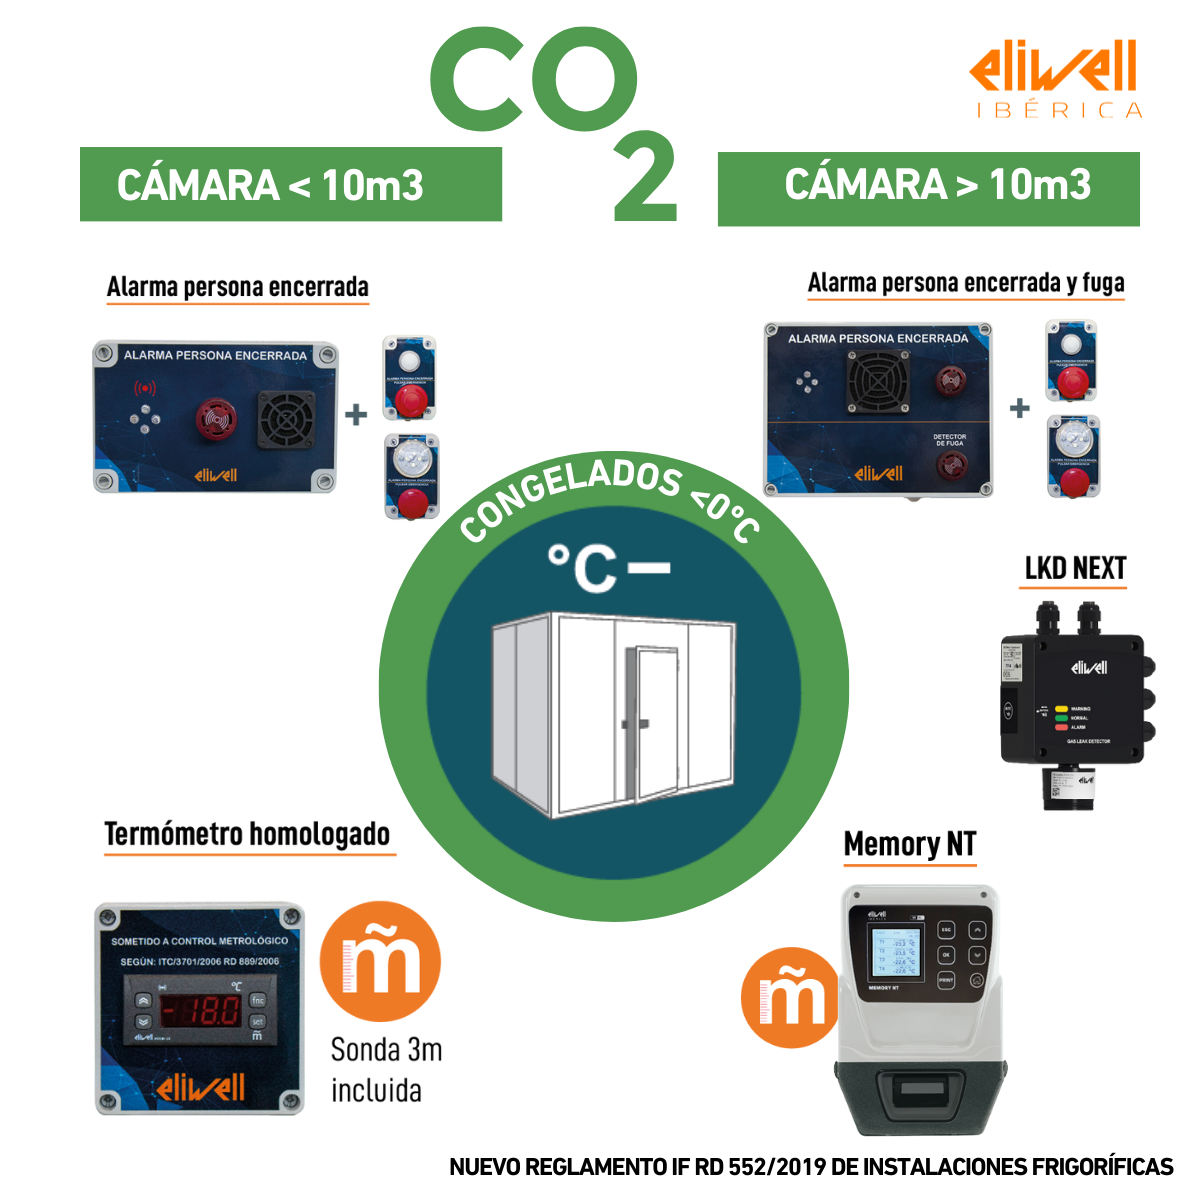 Foto con los sistemas de alarma y señalización que exige la normativa para cámaras frigoríficas de congelados  con CO2